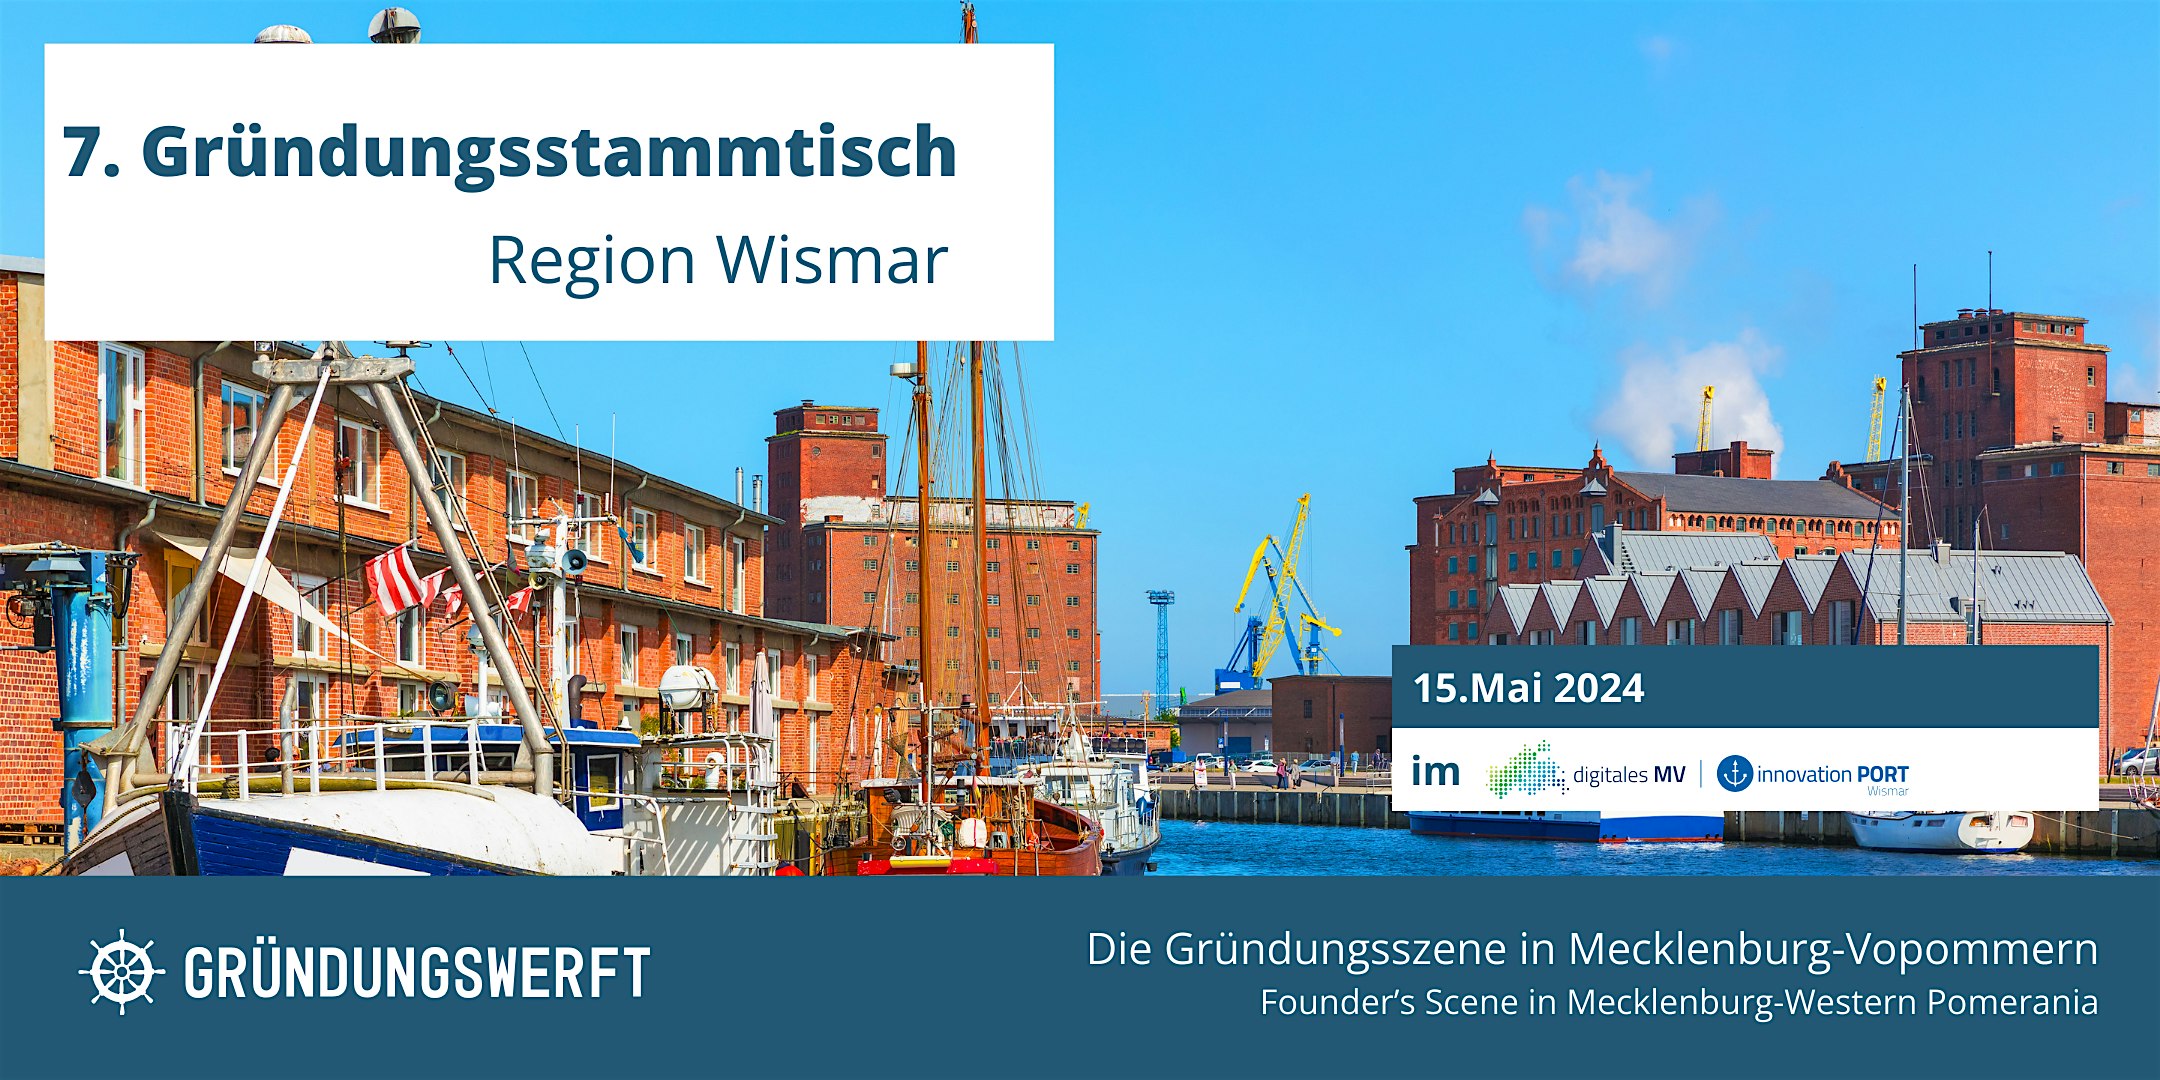 Veranstaltungsbild für die Veranstaltung 7. Gründungsstammtisch Region Wismar im Innovationport